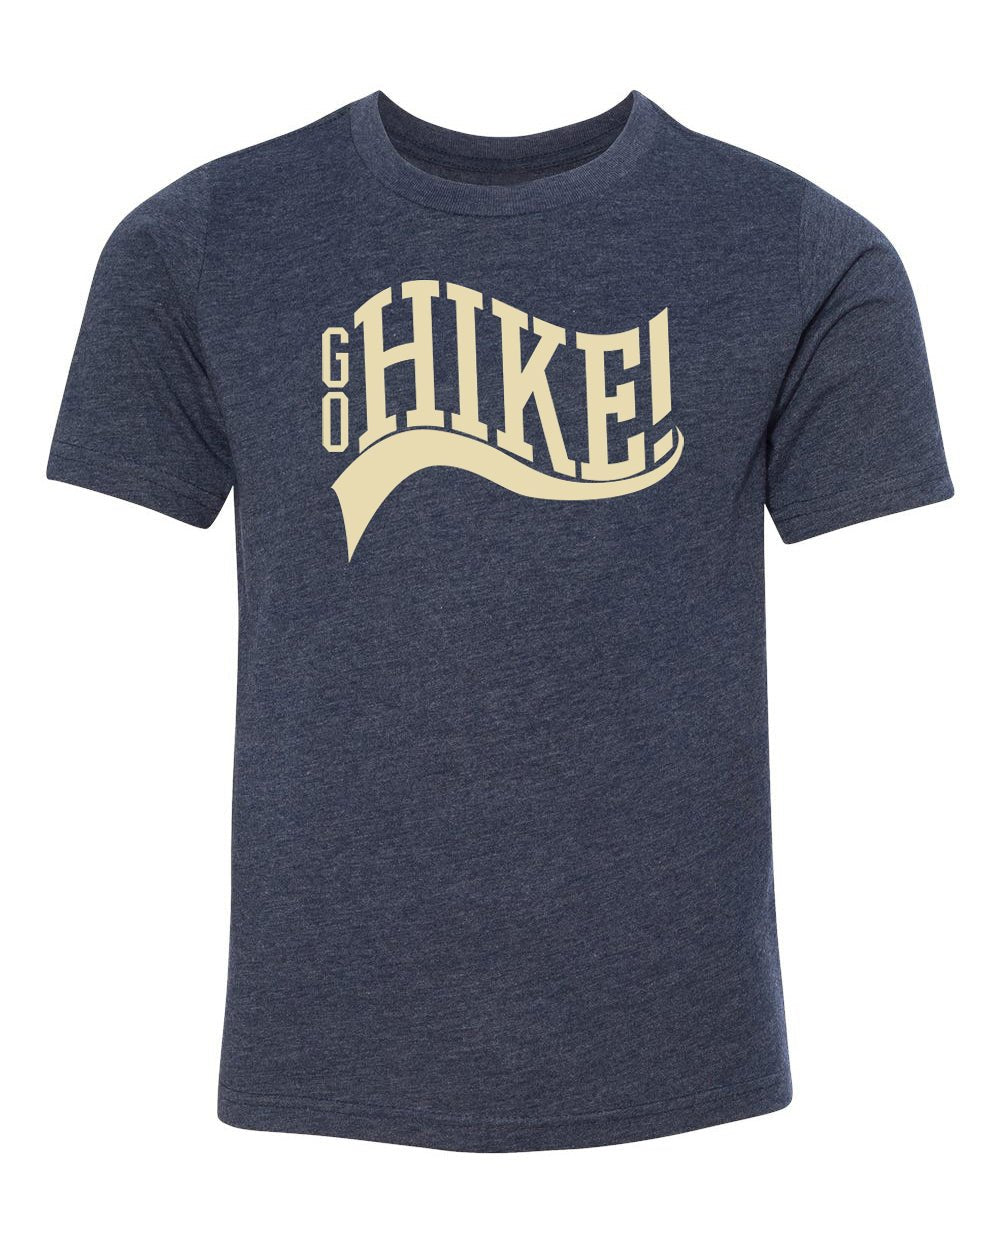 Go Hike! Kids T Shirts - Mato & Hash